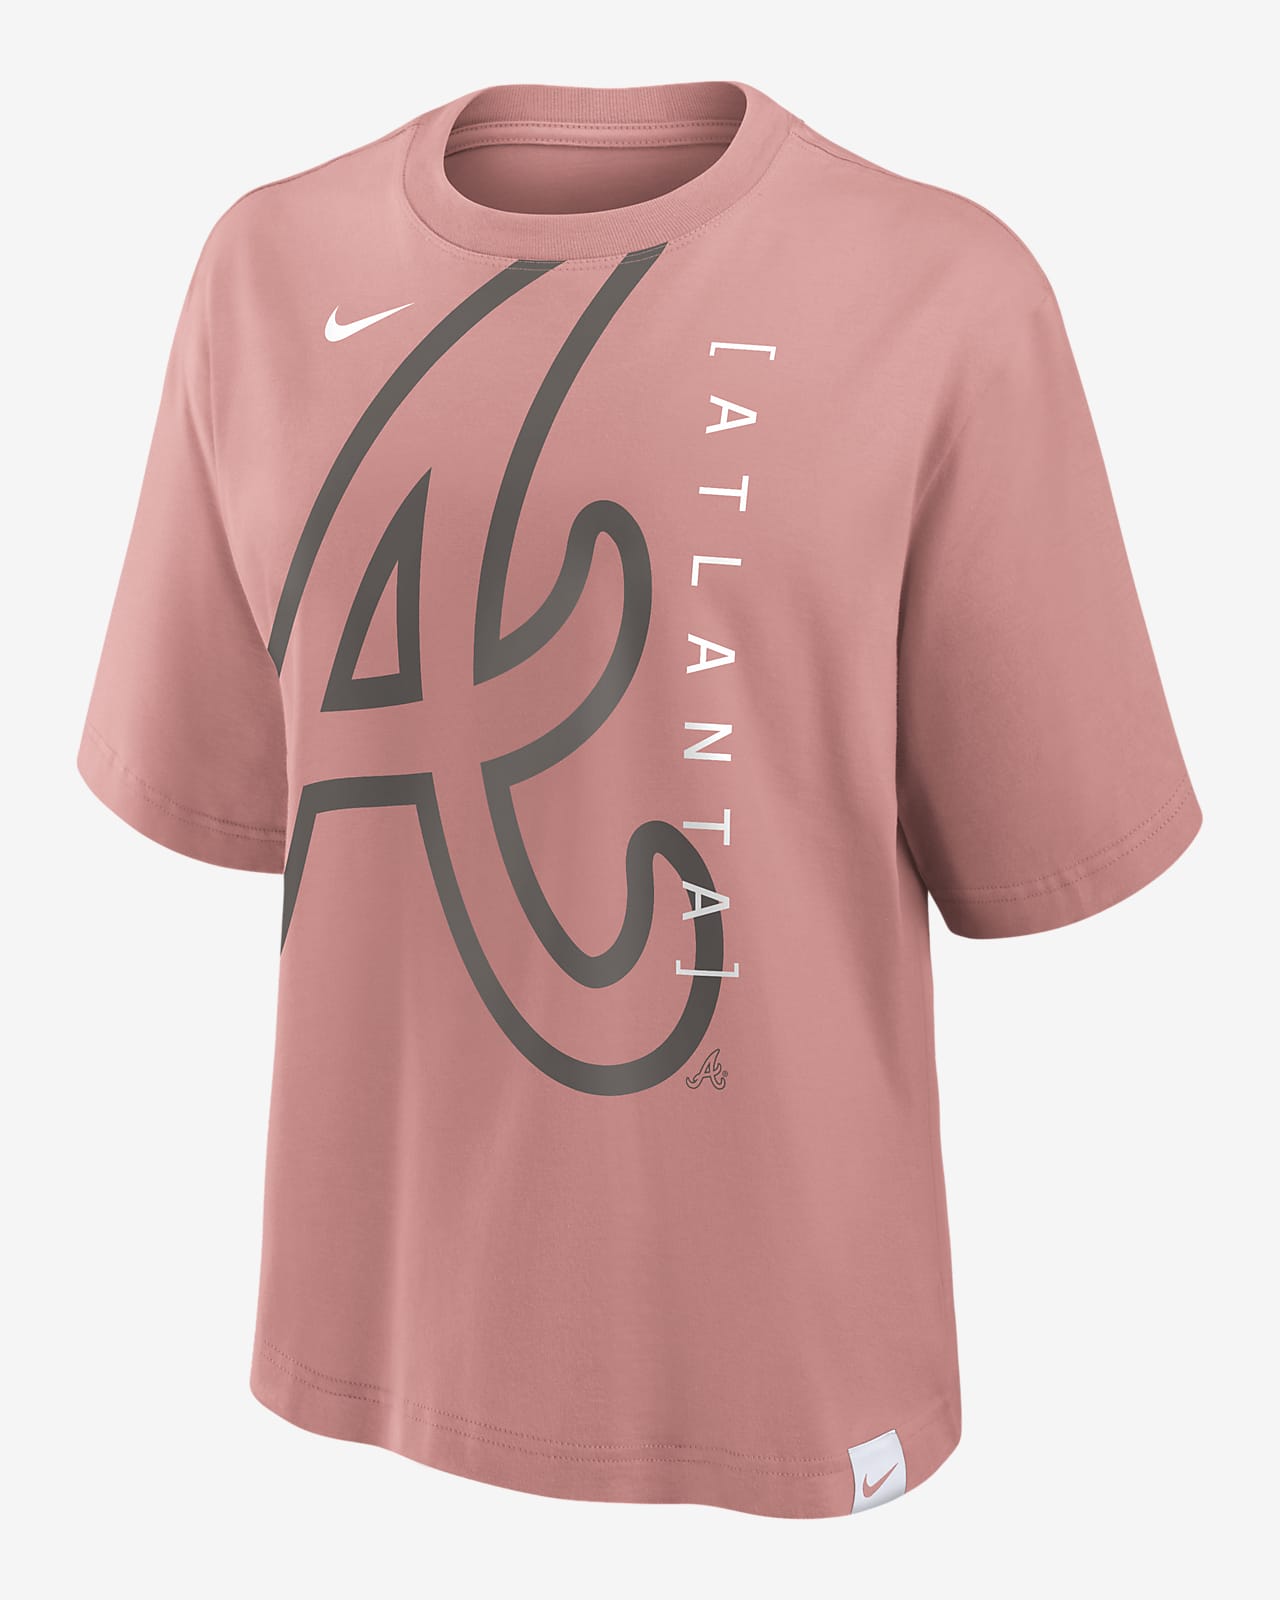 Atlanta Braves Statement Boxy Women's Nike MLB T-Shirt